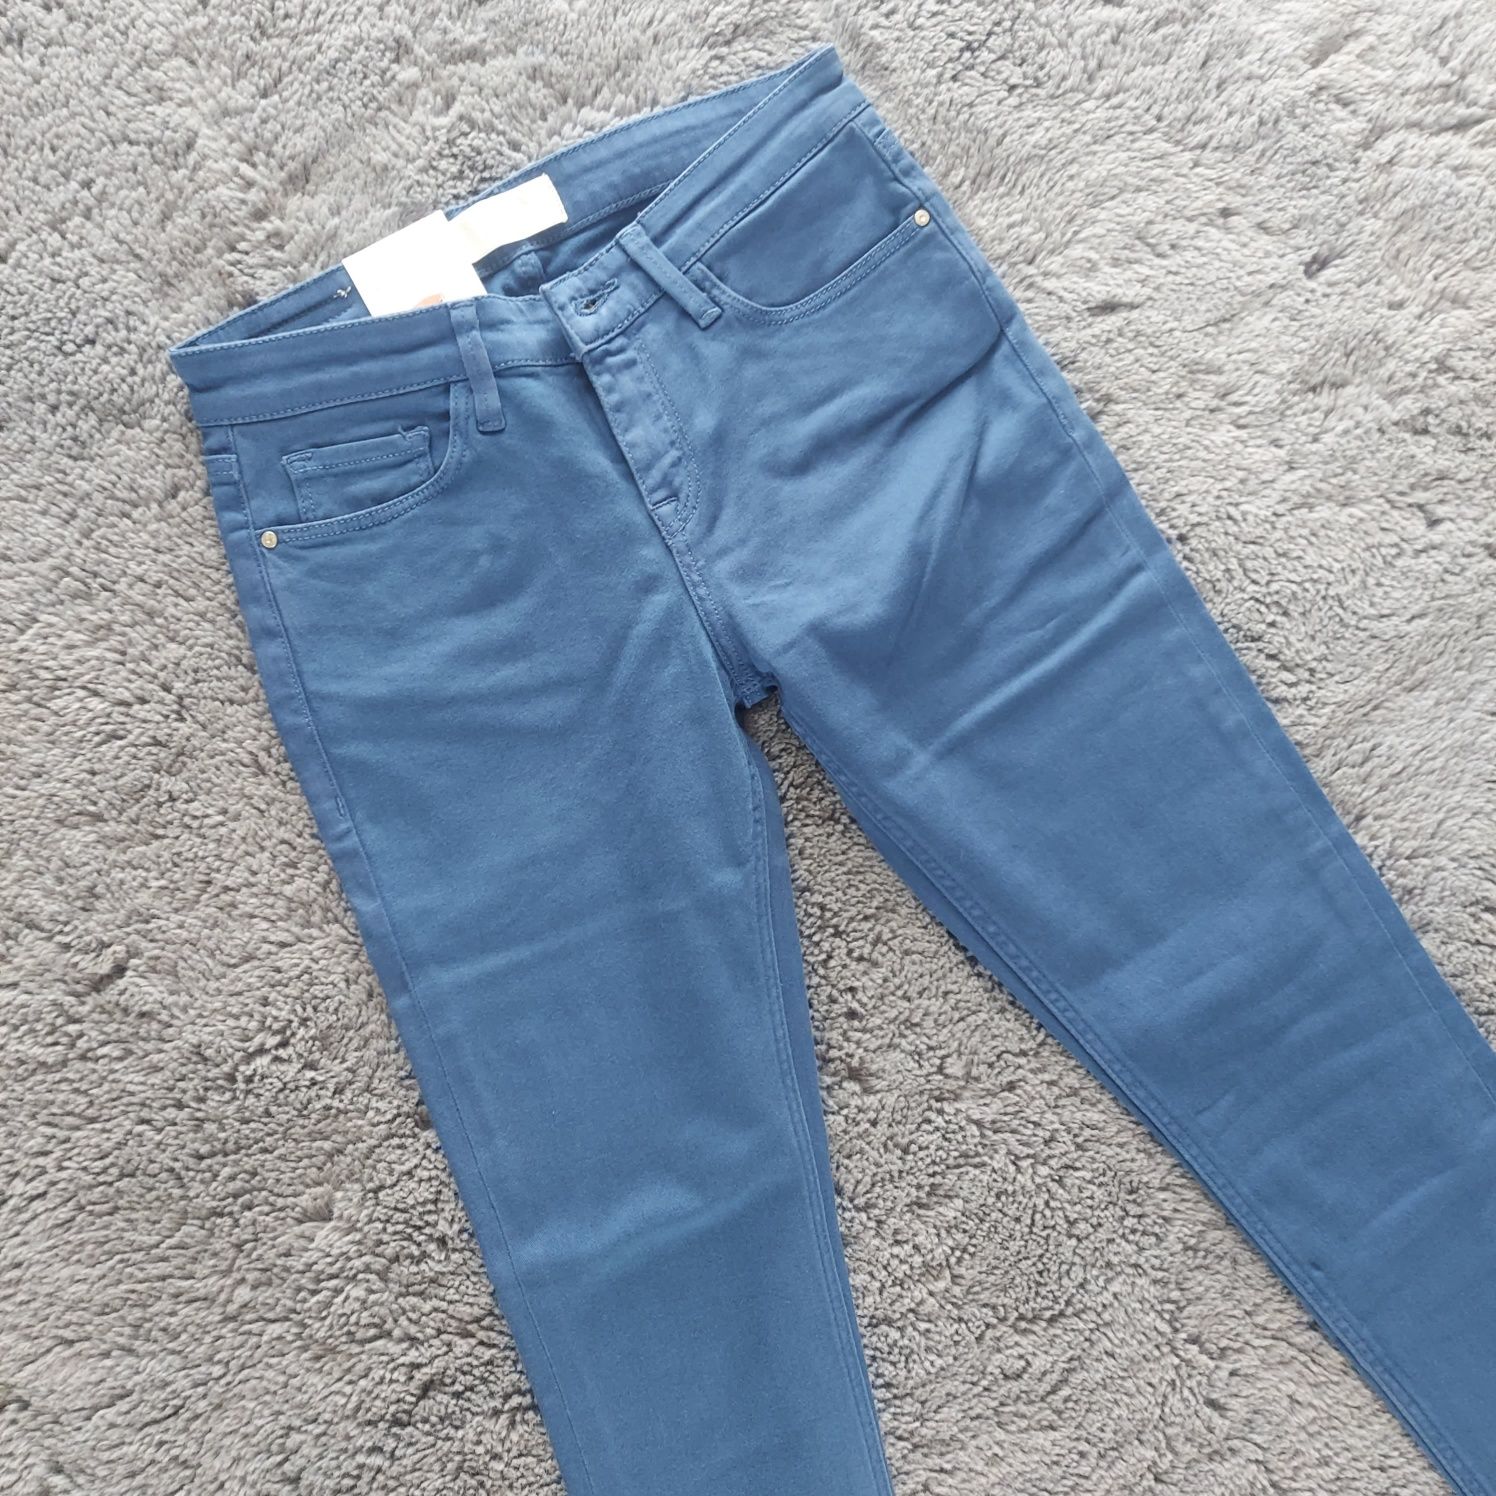 Nowe spodnie jeansy rurki cross w25 xs 34 alyss